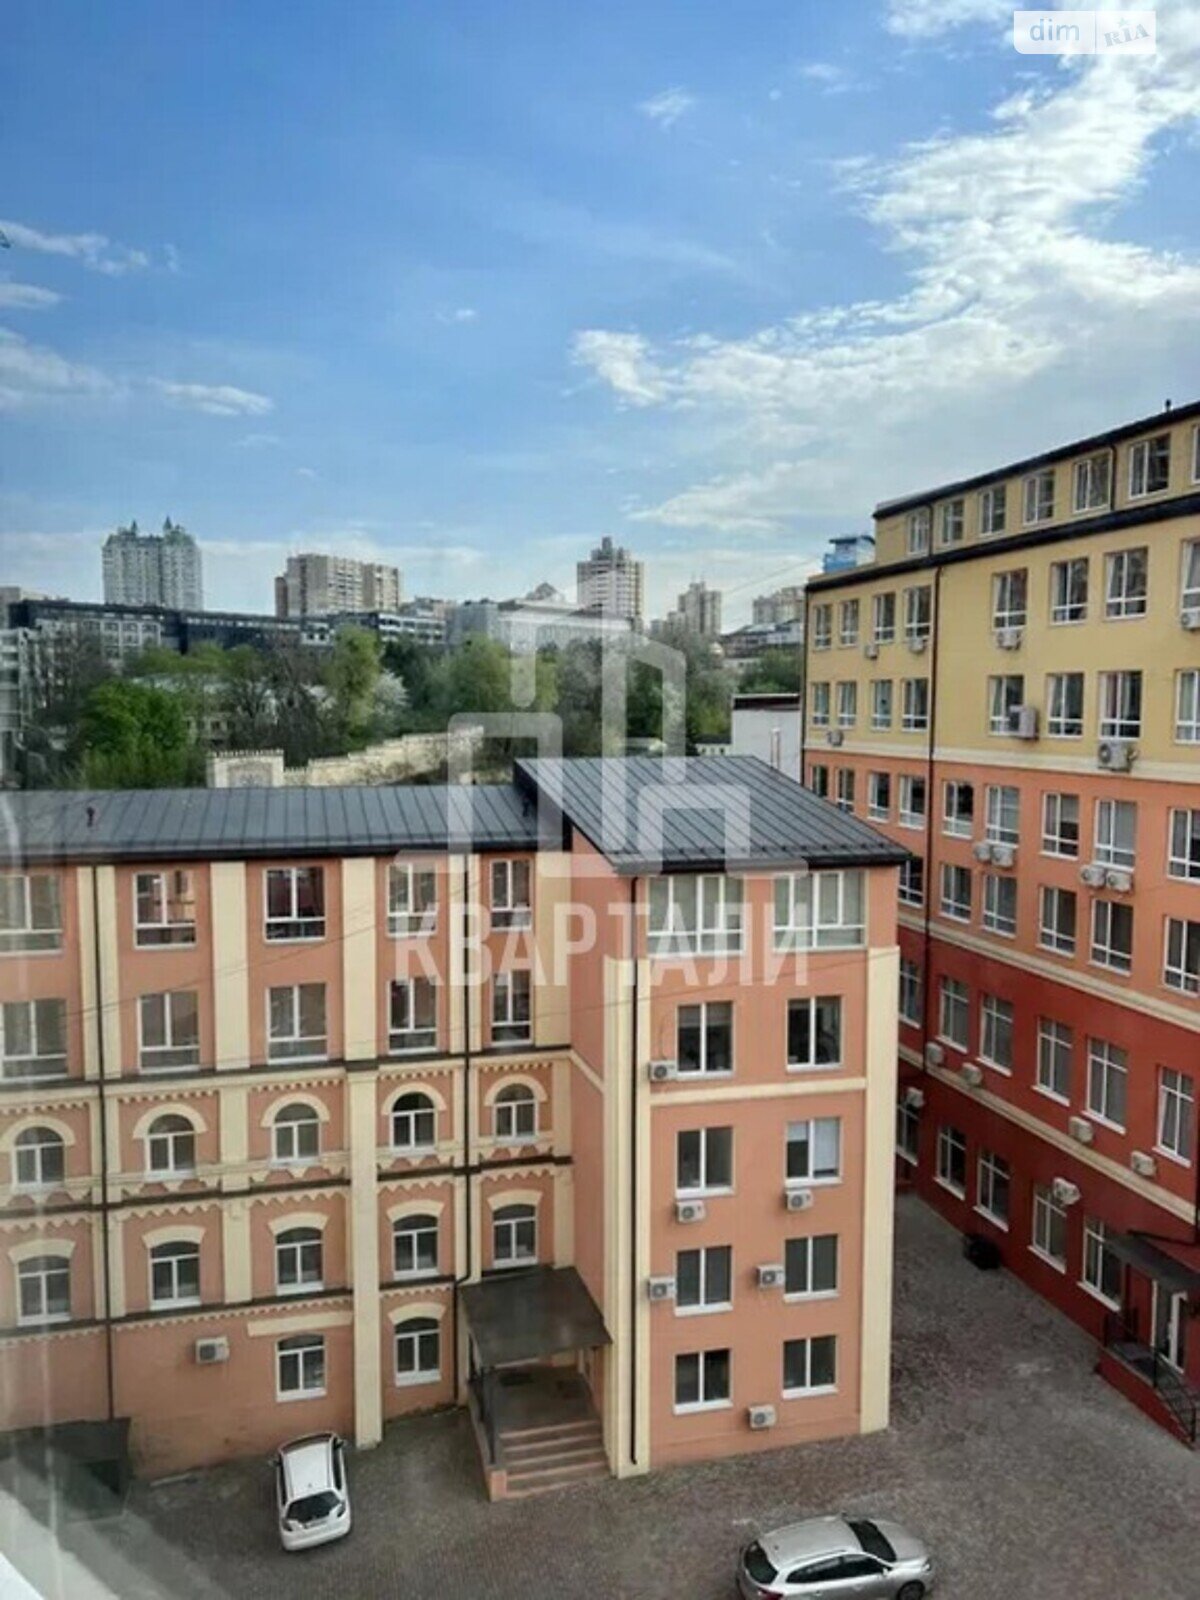 Офисное помещение на 90.3 кв.м. в Киеве фото 1